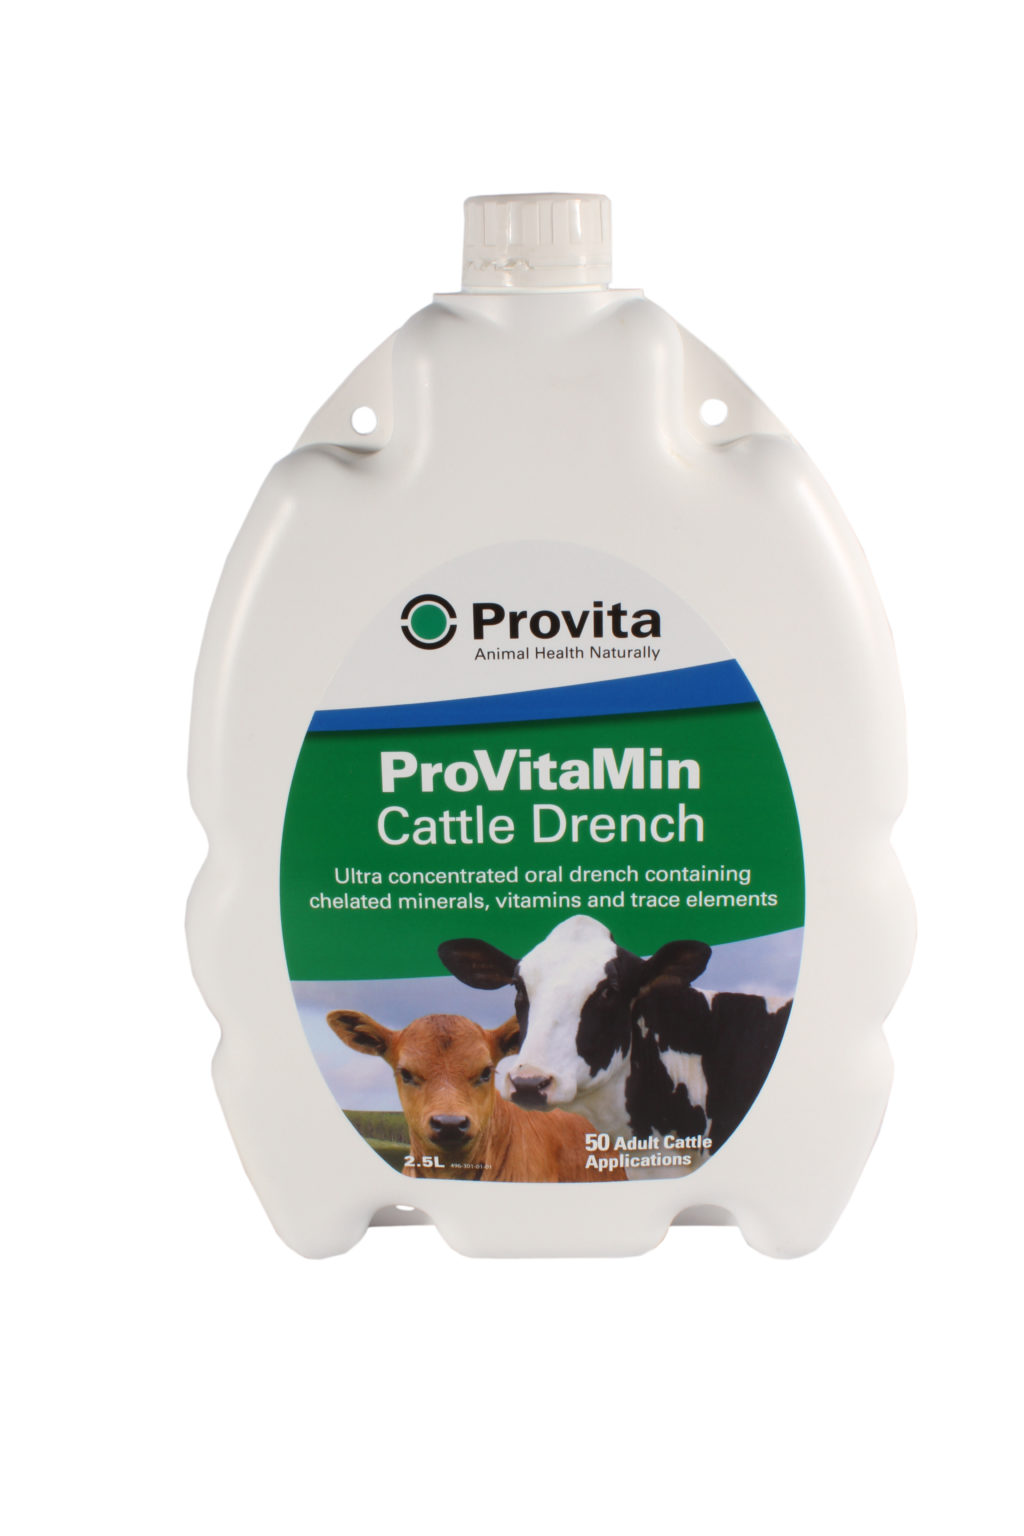 Provitamin Cattle Drench 2.5L (